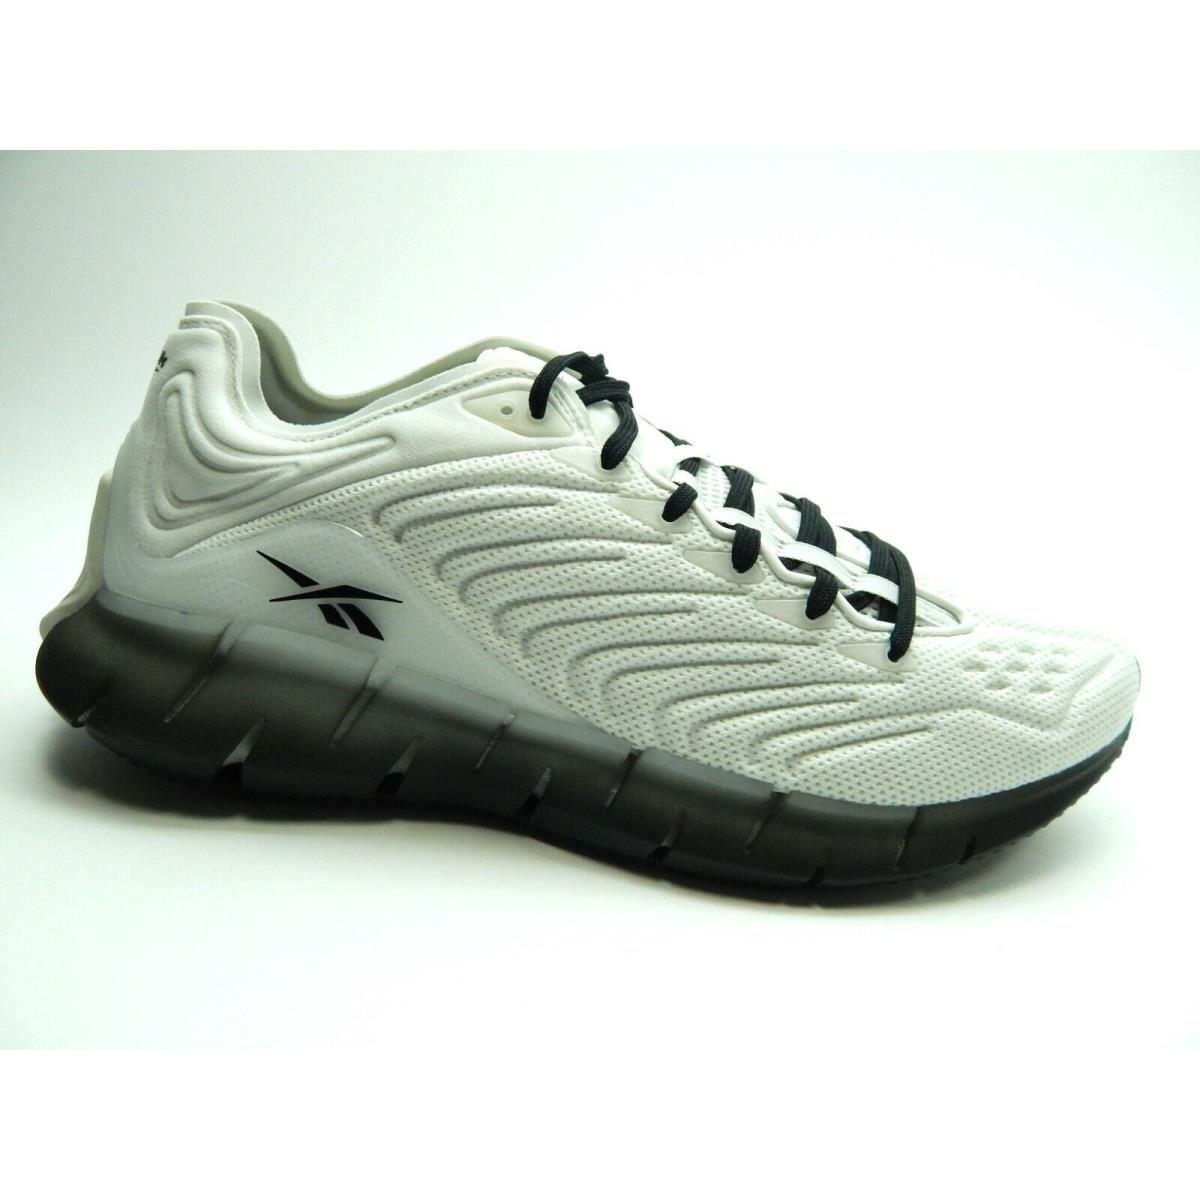 Reebok Zig Kinetica Running FW7912 Men Shoes Size 13